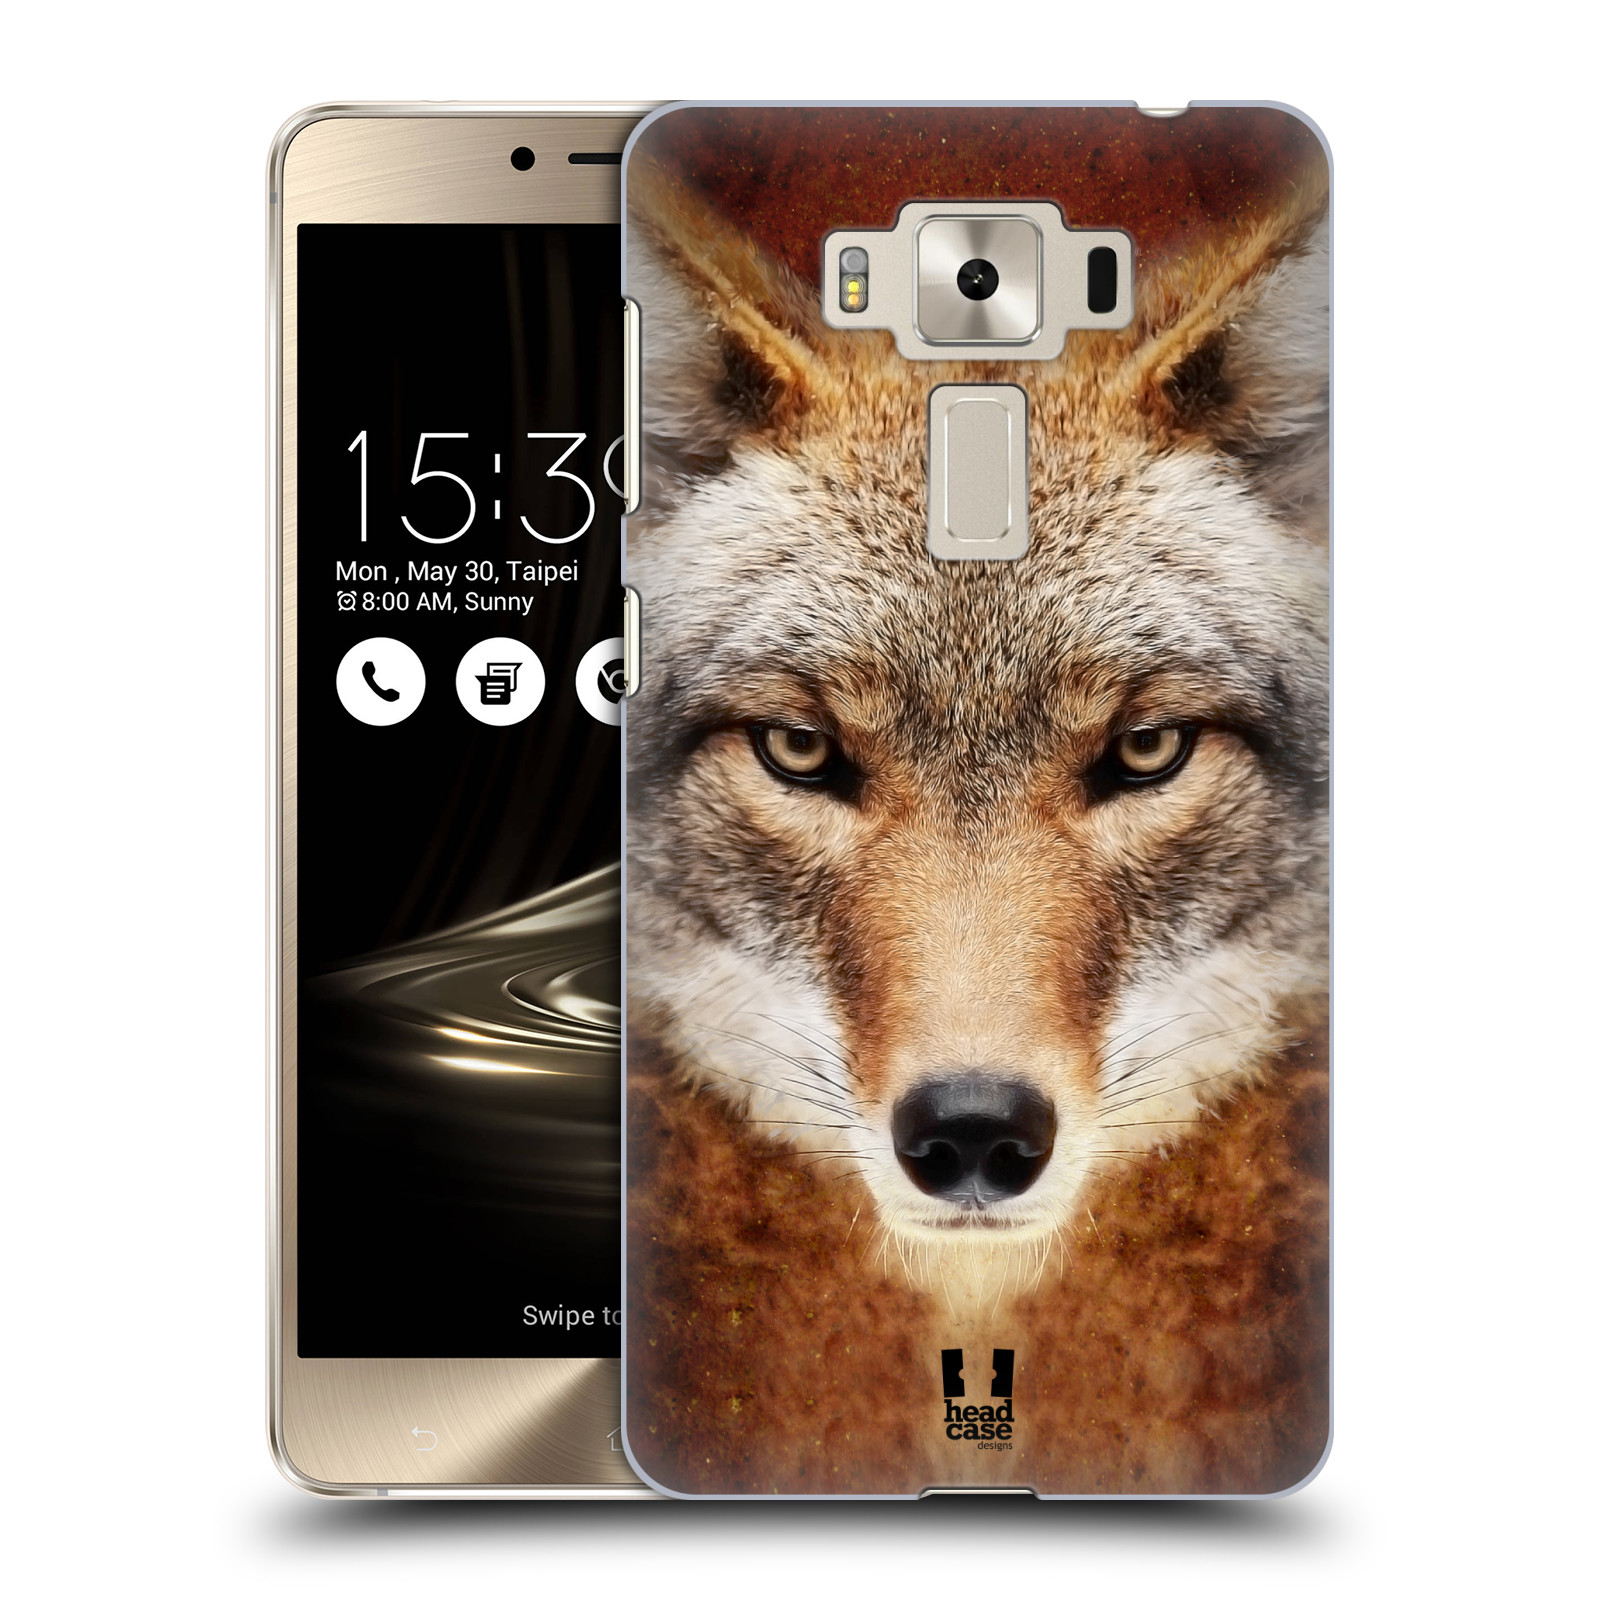 HEAD CASE plastový obal na mobil Asus Zenfone 3 DELUXE ZS550KL vzor Zvířecí tváře kojot